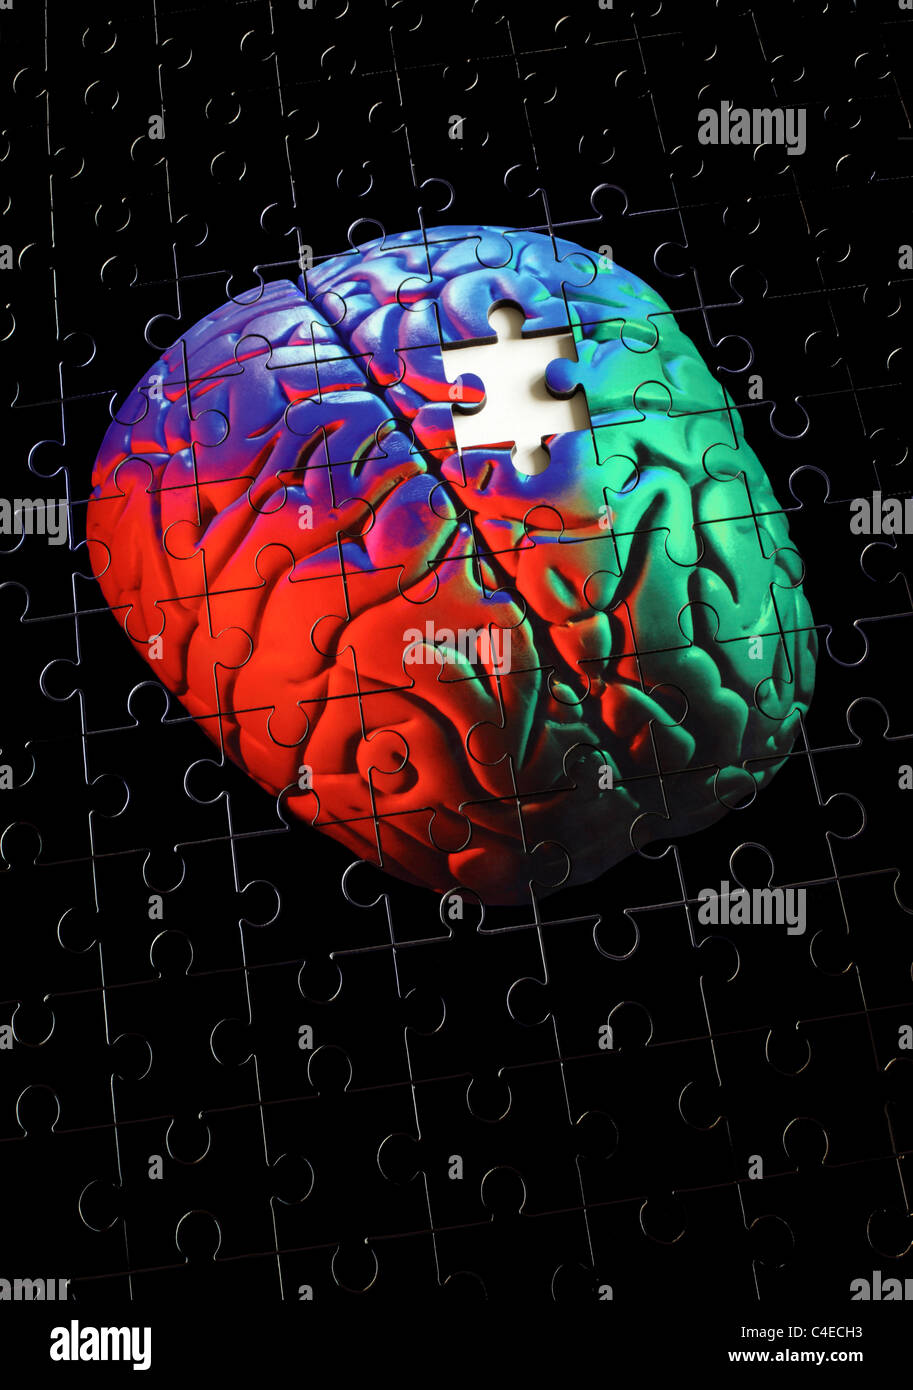 Foto ein Puzzle von einem Menschen (Modell) Gehirn, mit einer Stichsäge Puzzle Stück fehlt. Stockfoto